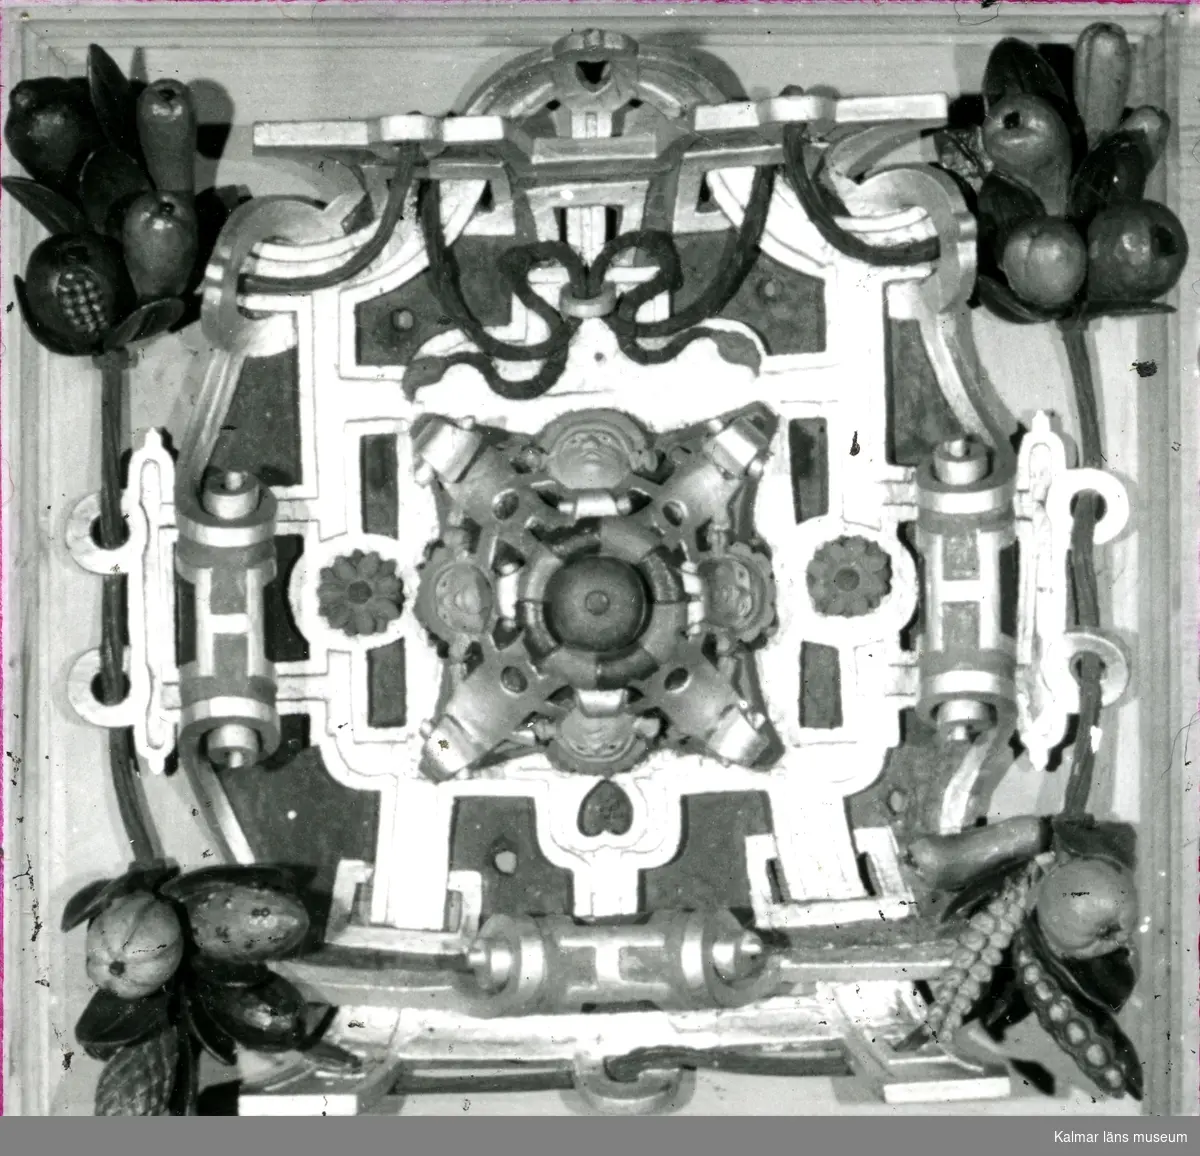 Kalmar slott Detalj av Kungsmakets kassettak.
På vissa plåtar har Martin Olsson klistrat eltejp för att markera hur bilden skulle beskäras i boken.